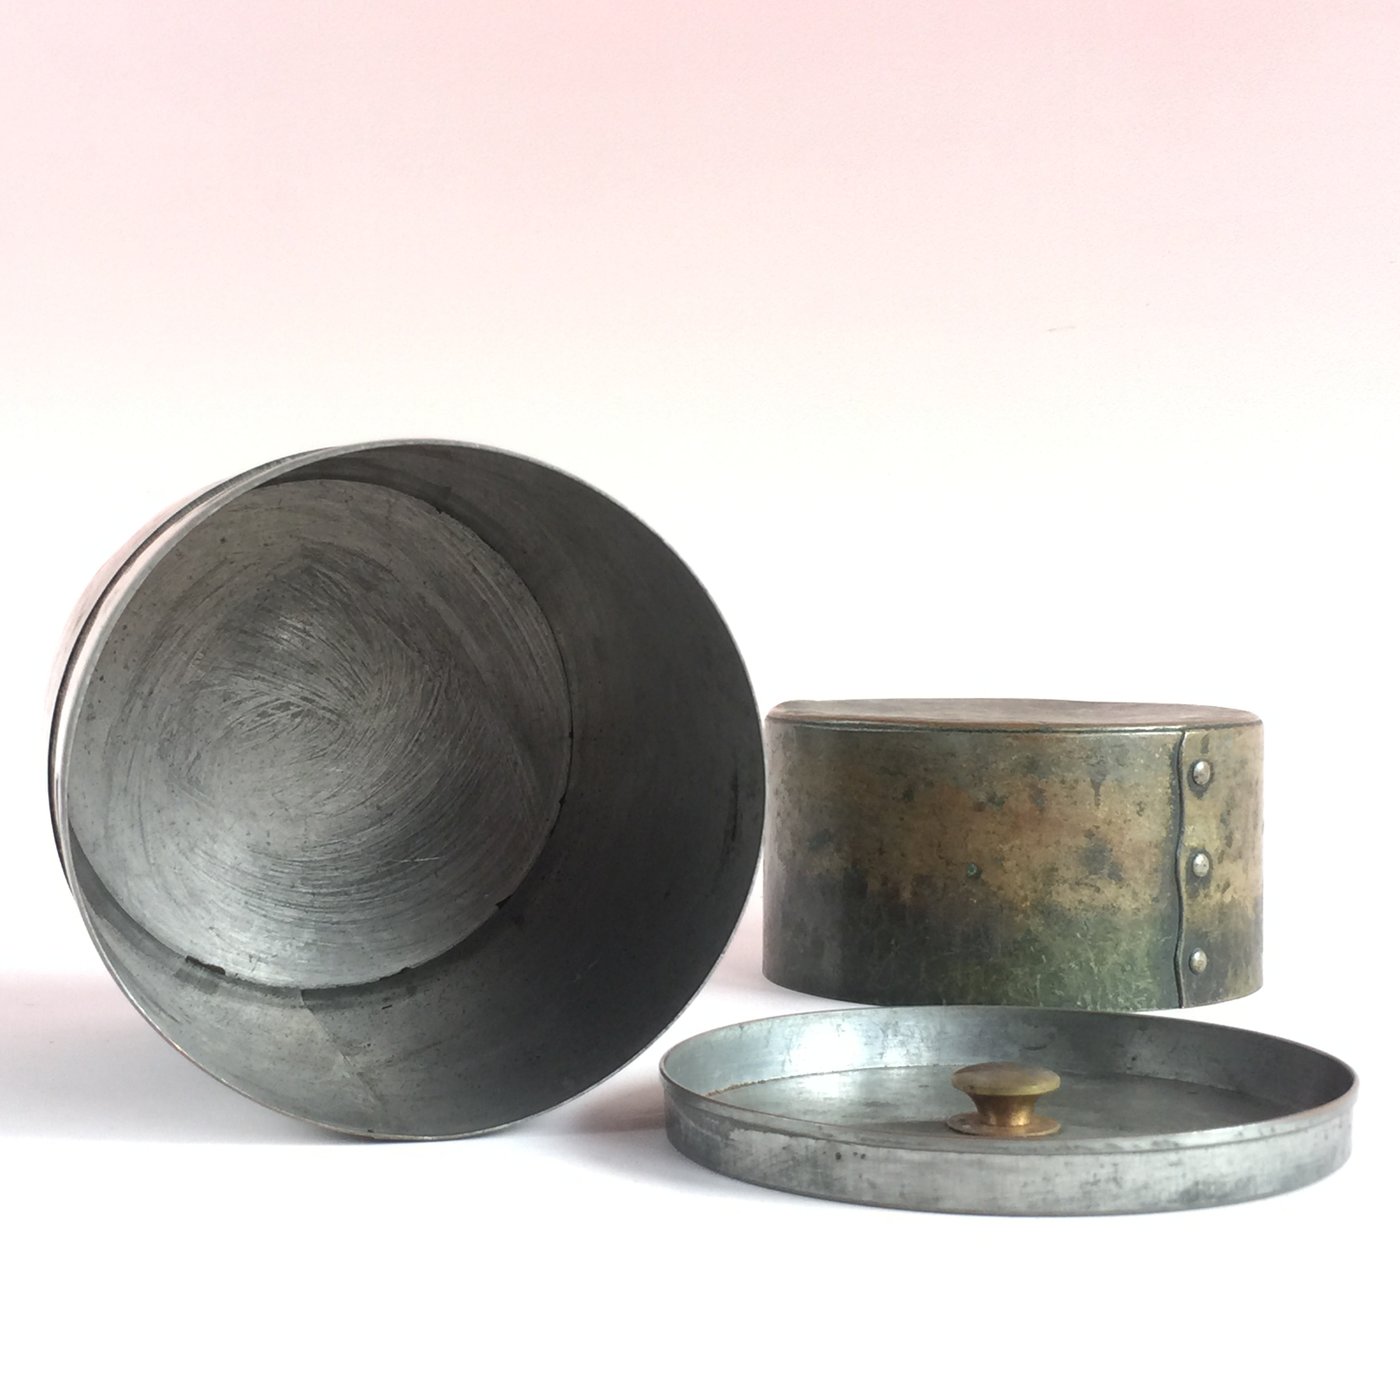 清雅堂 銅製 茶筒 茶入 茶道具 鋲止茶筒 銅 工芸 細工 茶器 古